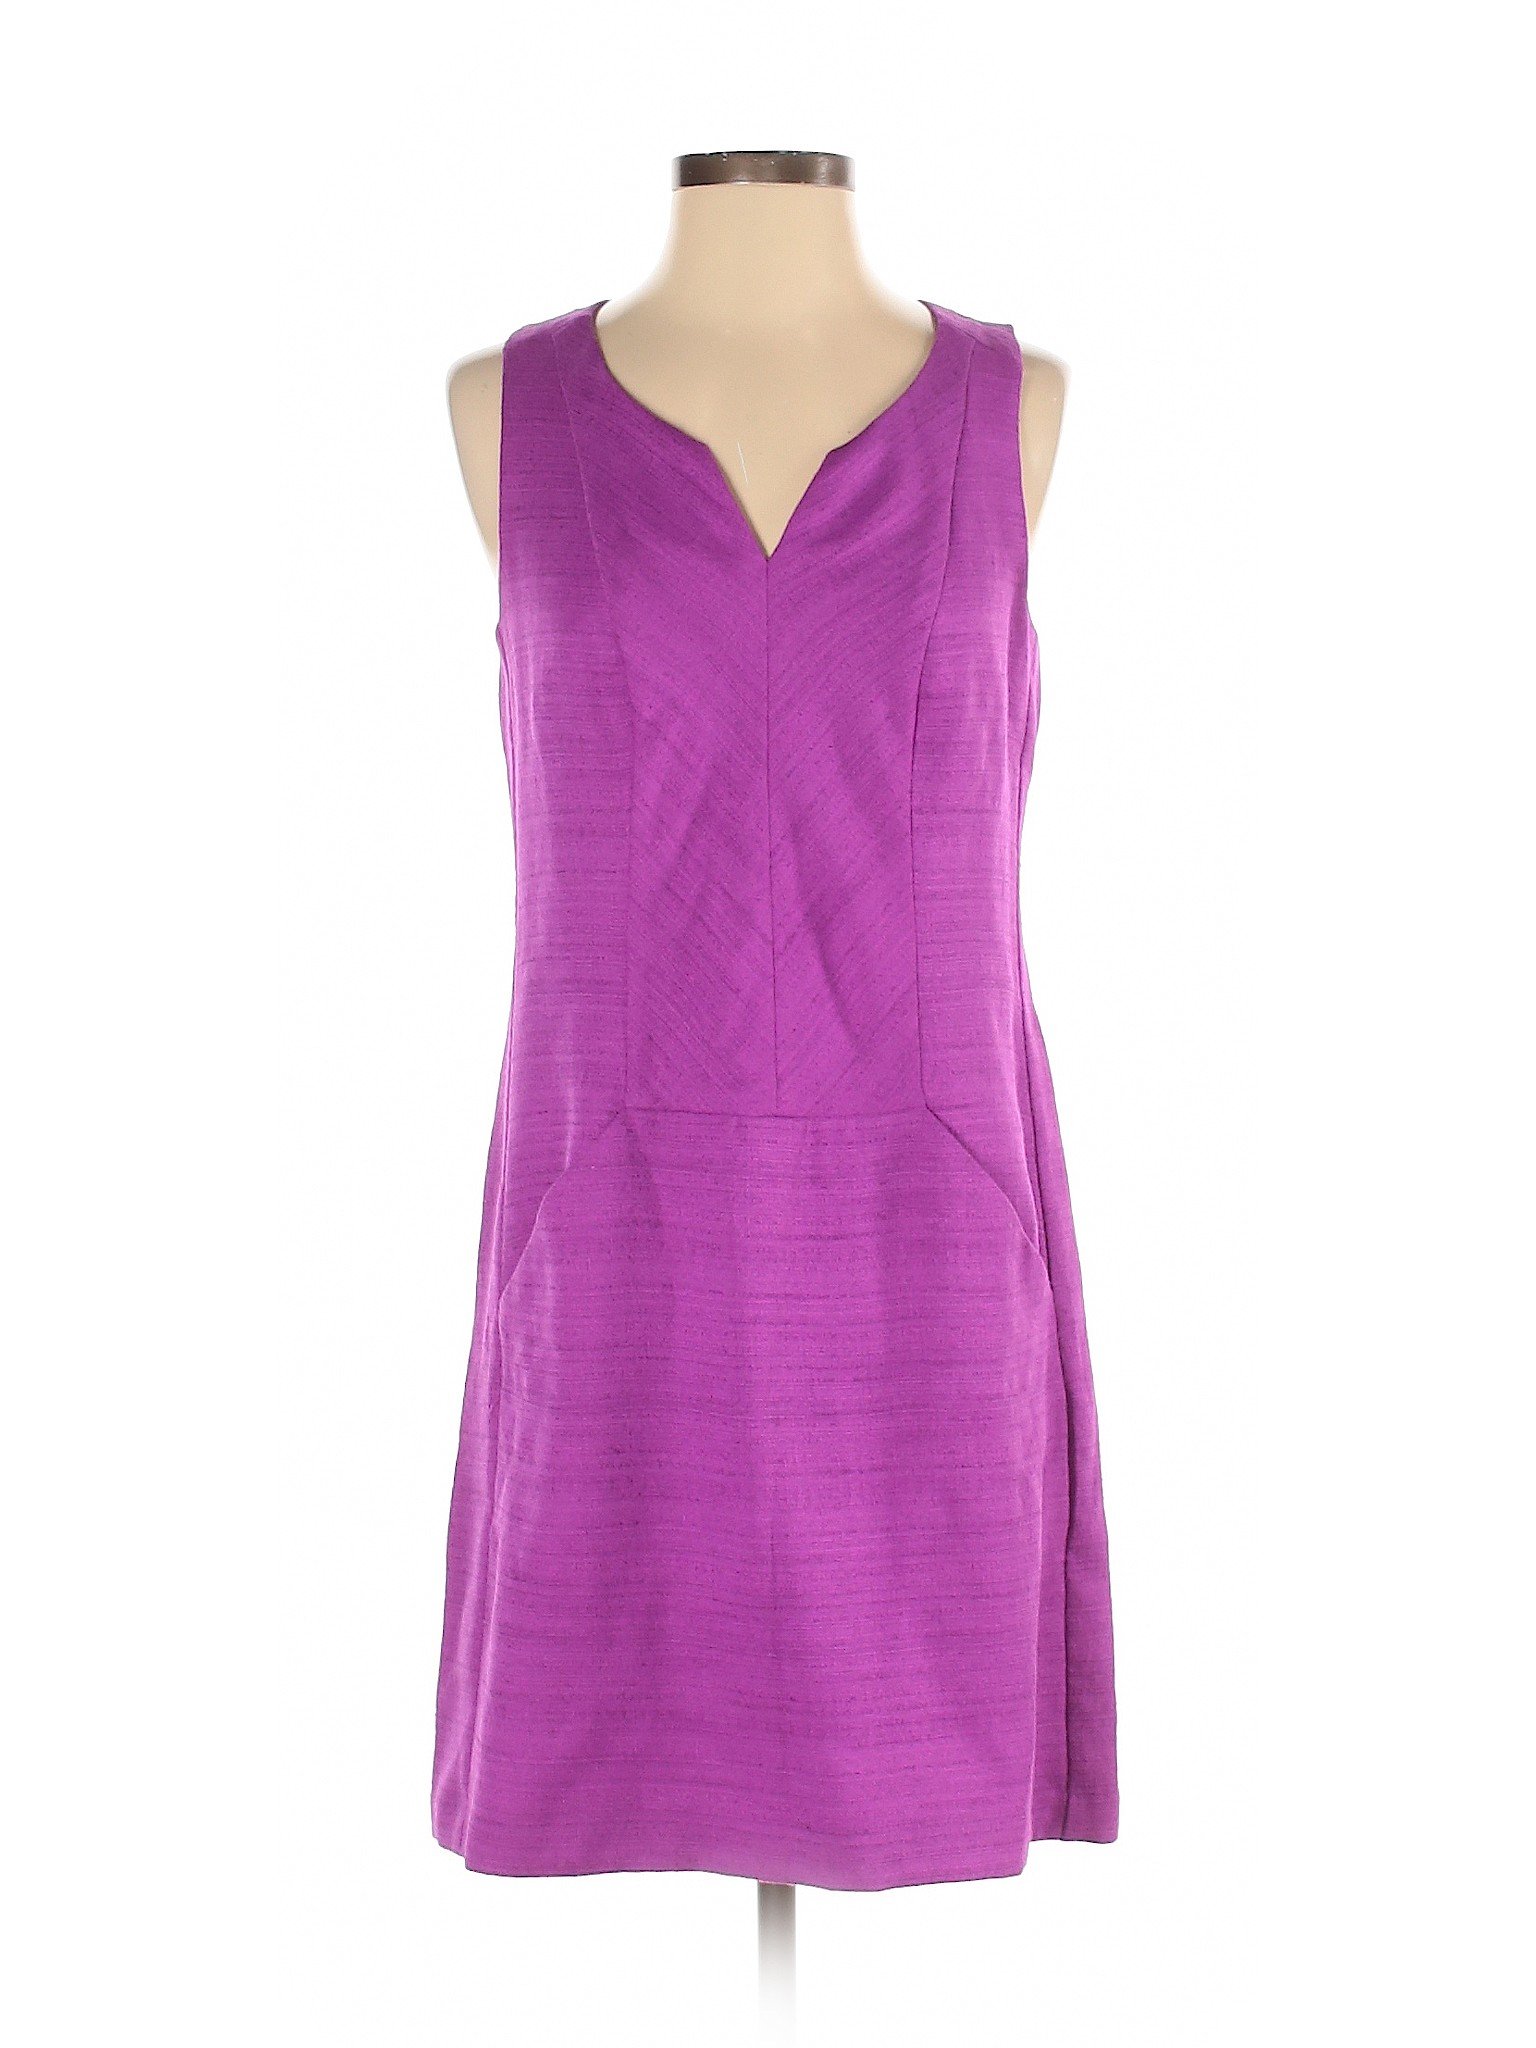 Ann Taylor LOFT Women Purple Casual Dress 4 | eBay